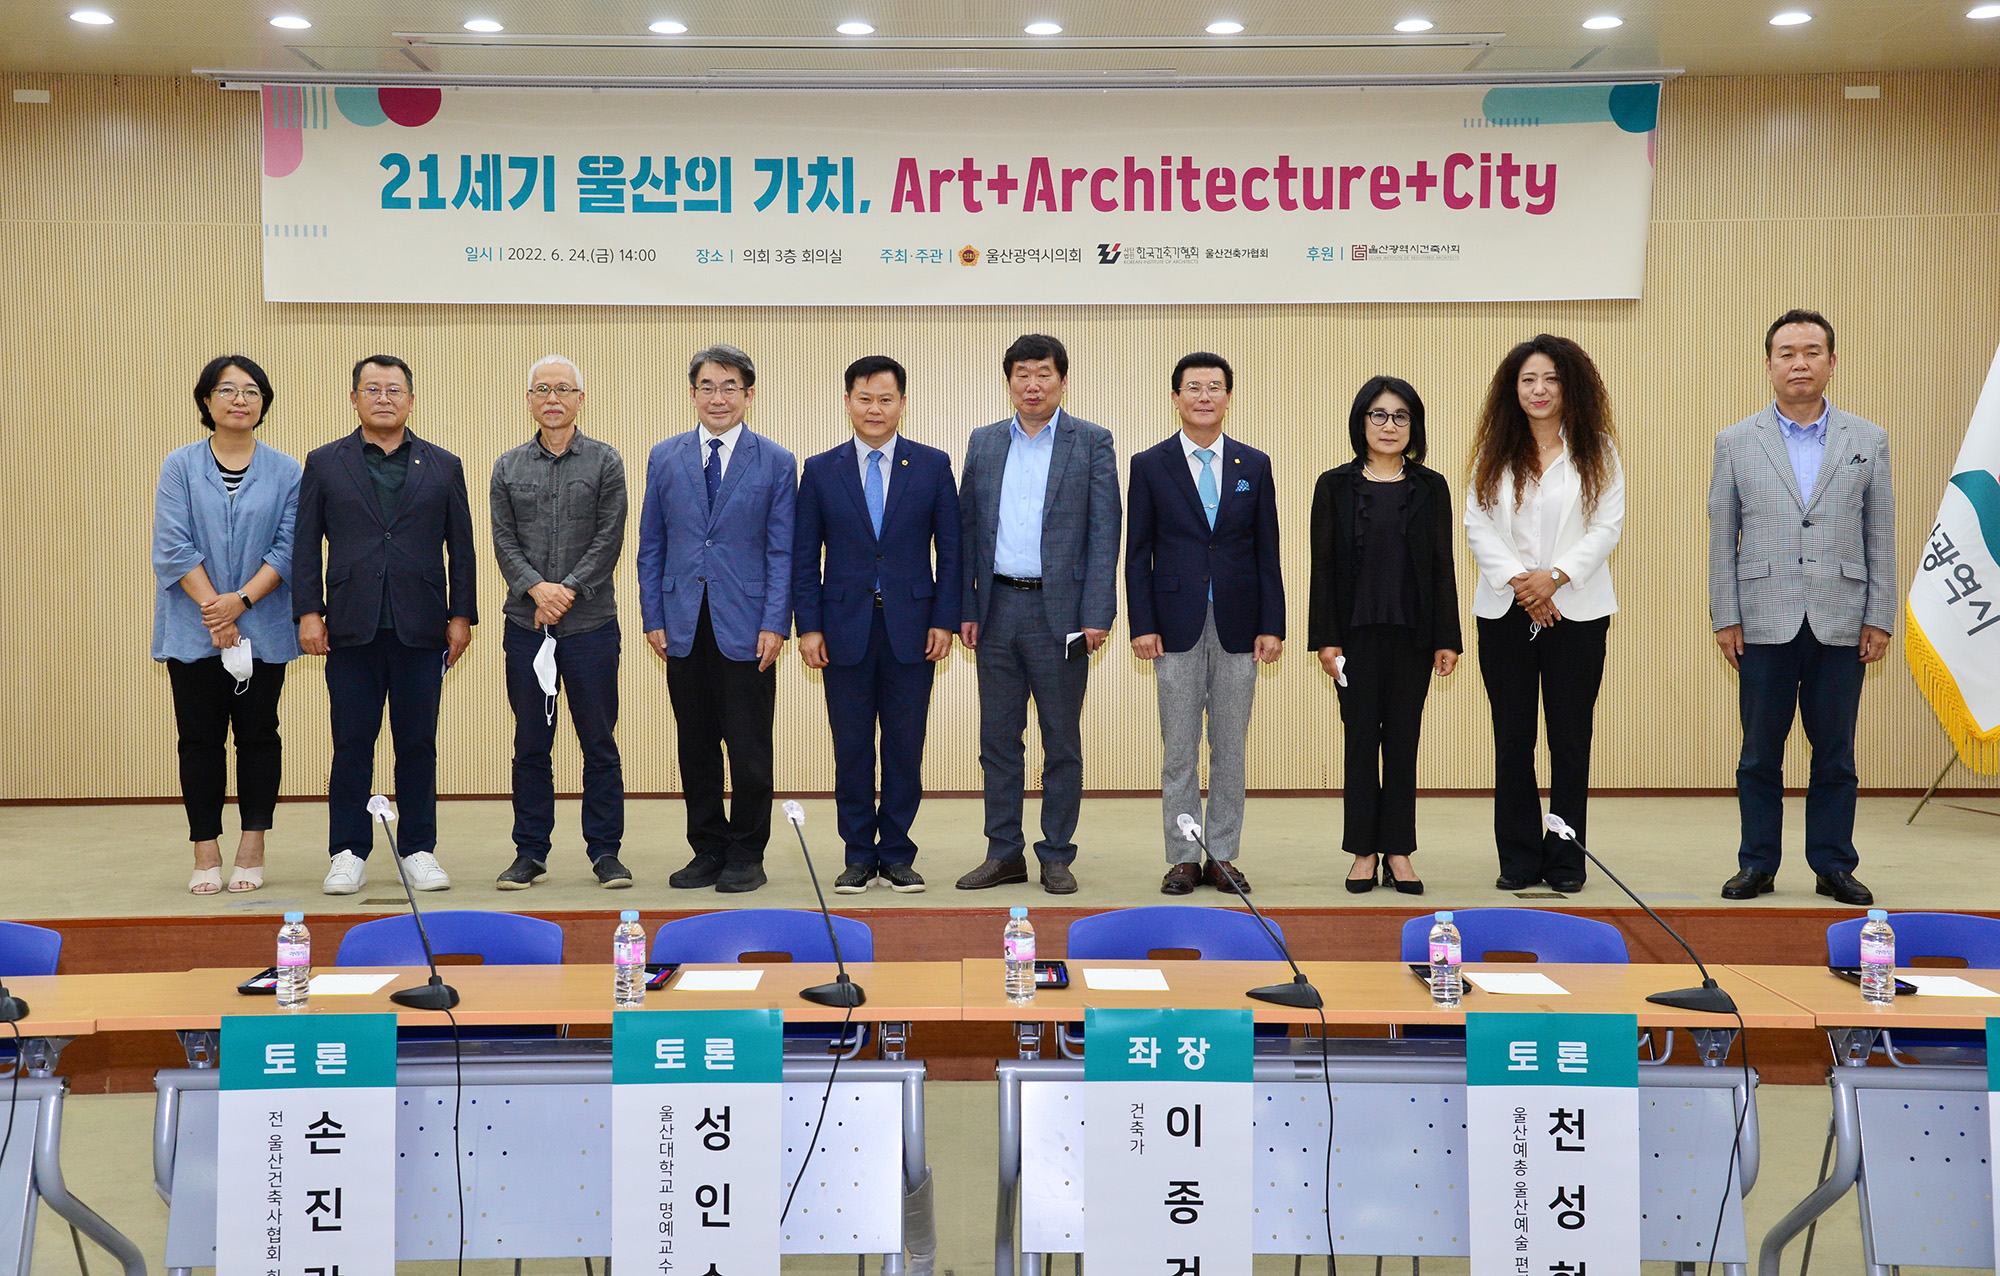 박병석 의장, ‘21세기 울산의 가치’ 세미나 개최8